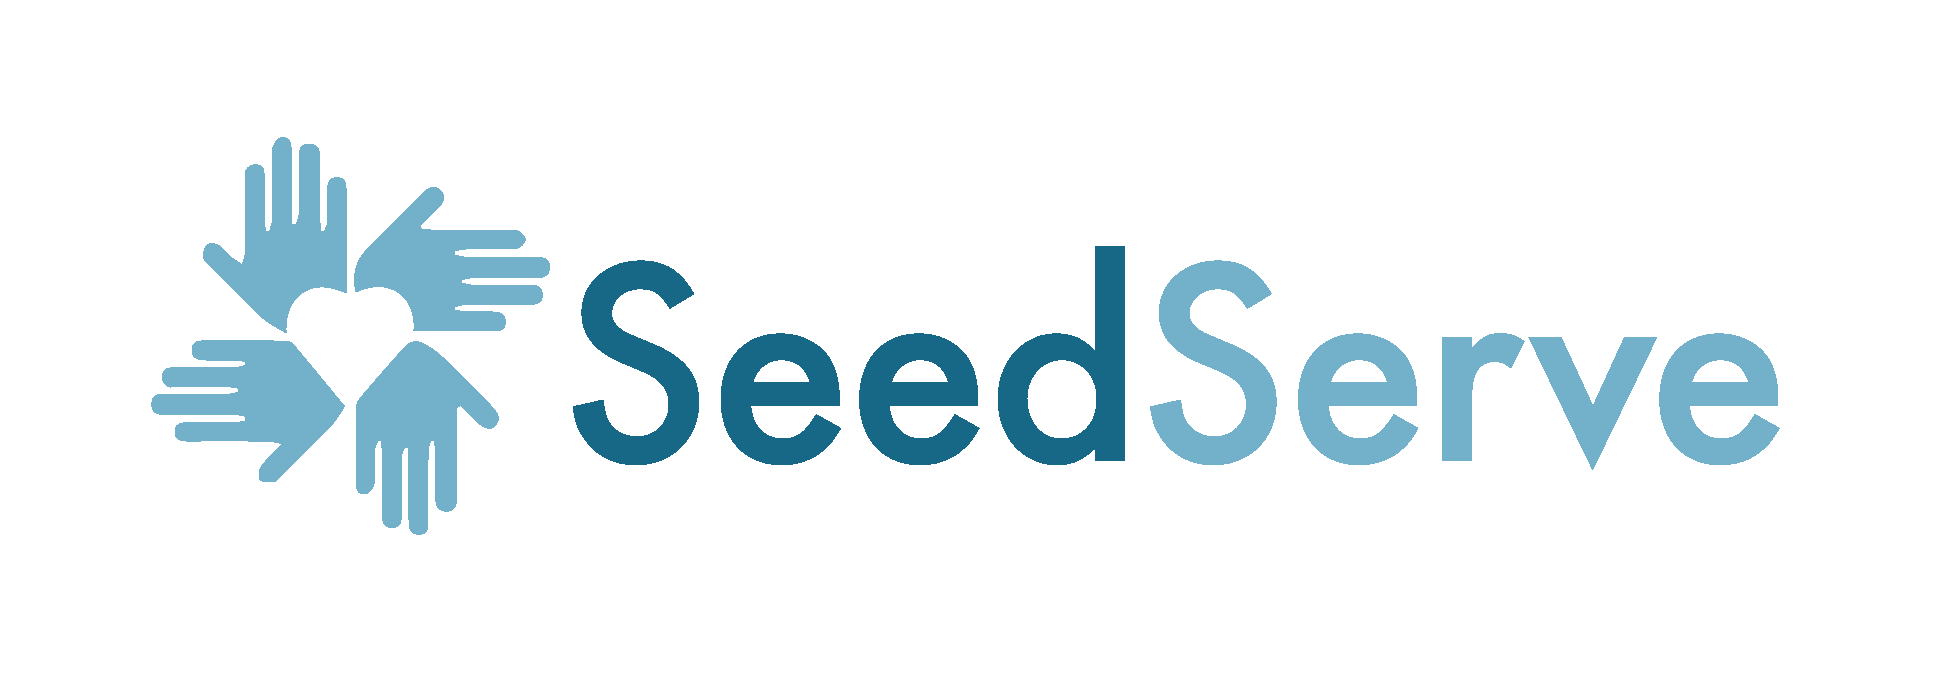 SeedServe Banner